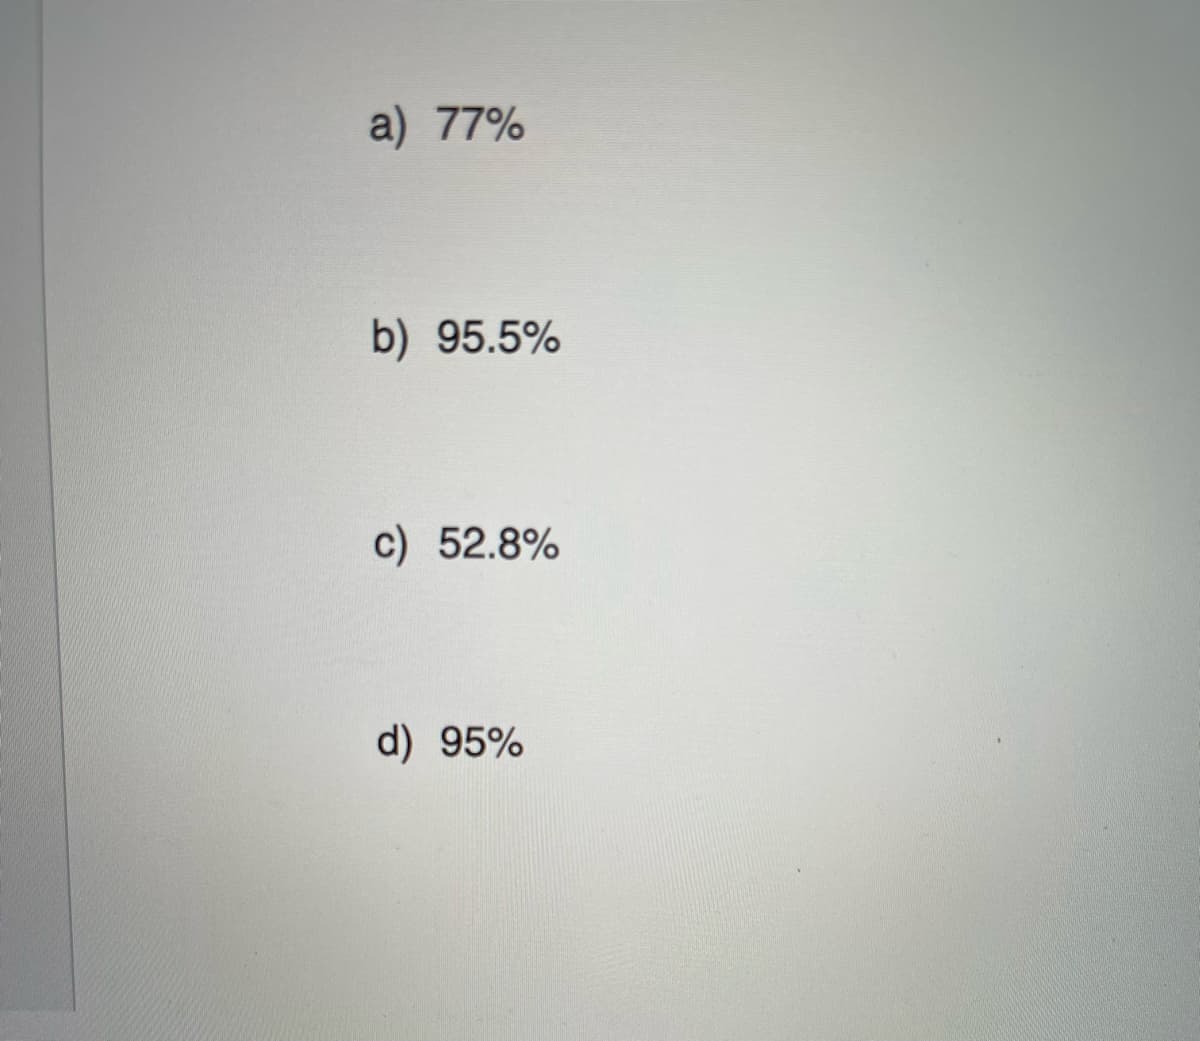 a) 77%
b) 95.5%
c) 52.8%
d) 95%
